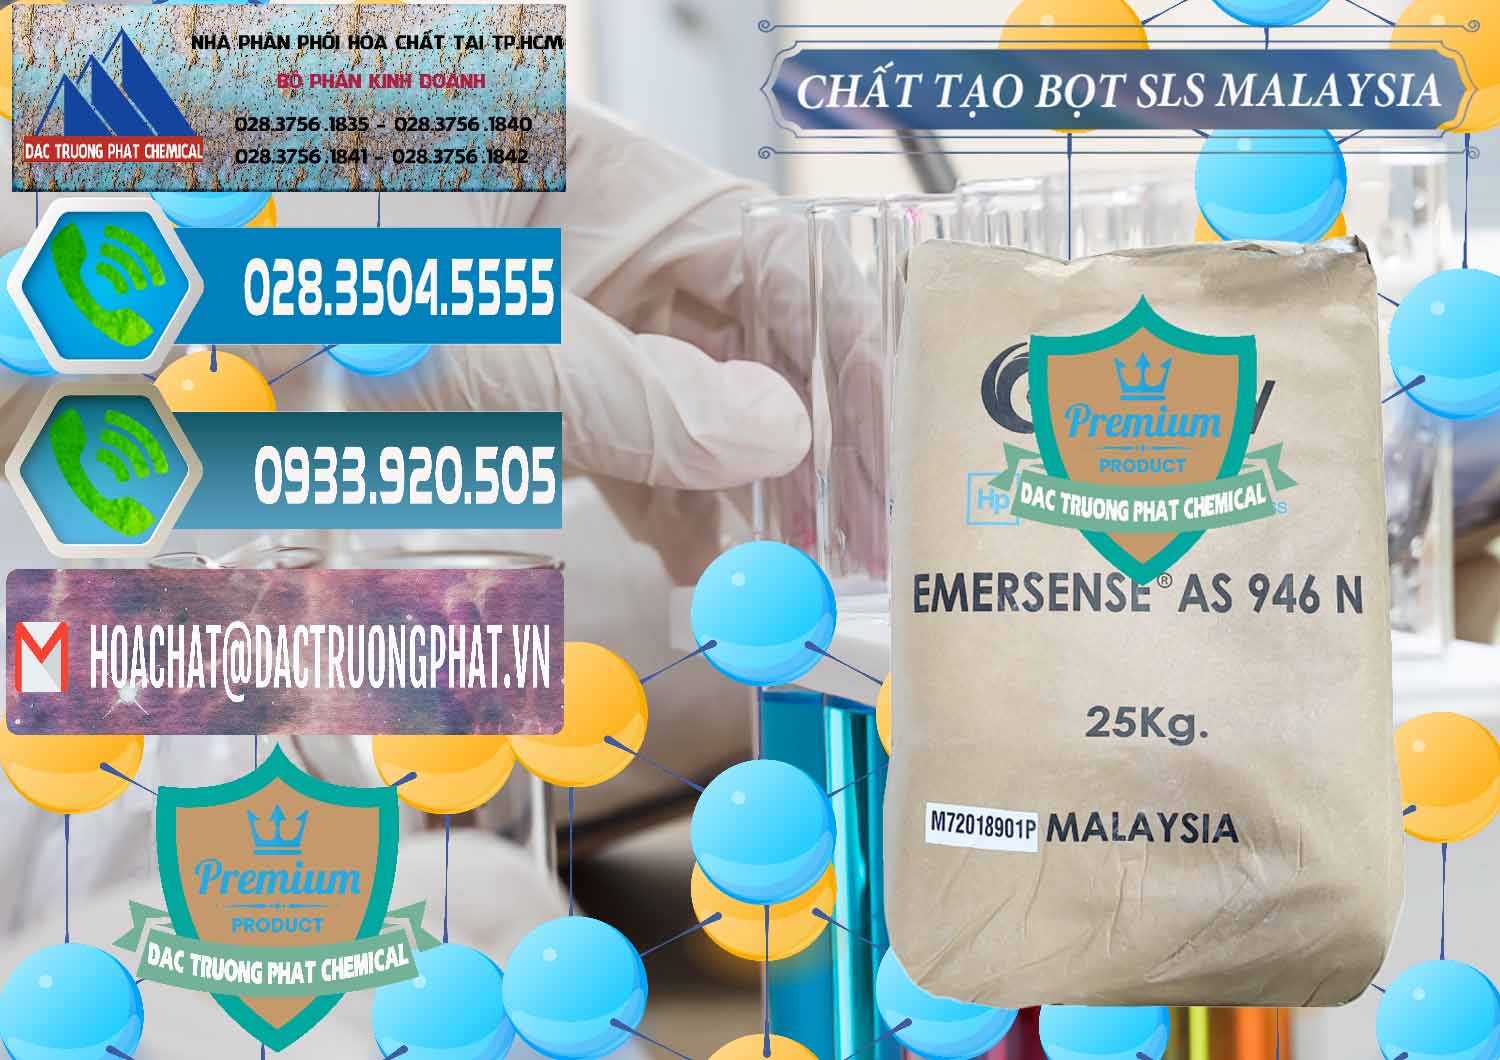 Cty kinh doanh ( bán ) Chất Tạo Bọt SLS Emery - Emersense AS 946N Mã Lai Malaysia - 0423 - Cty phân phối & kinh doanh hóa chất tại TP.HCM - congtyhoachat.net